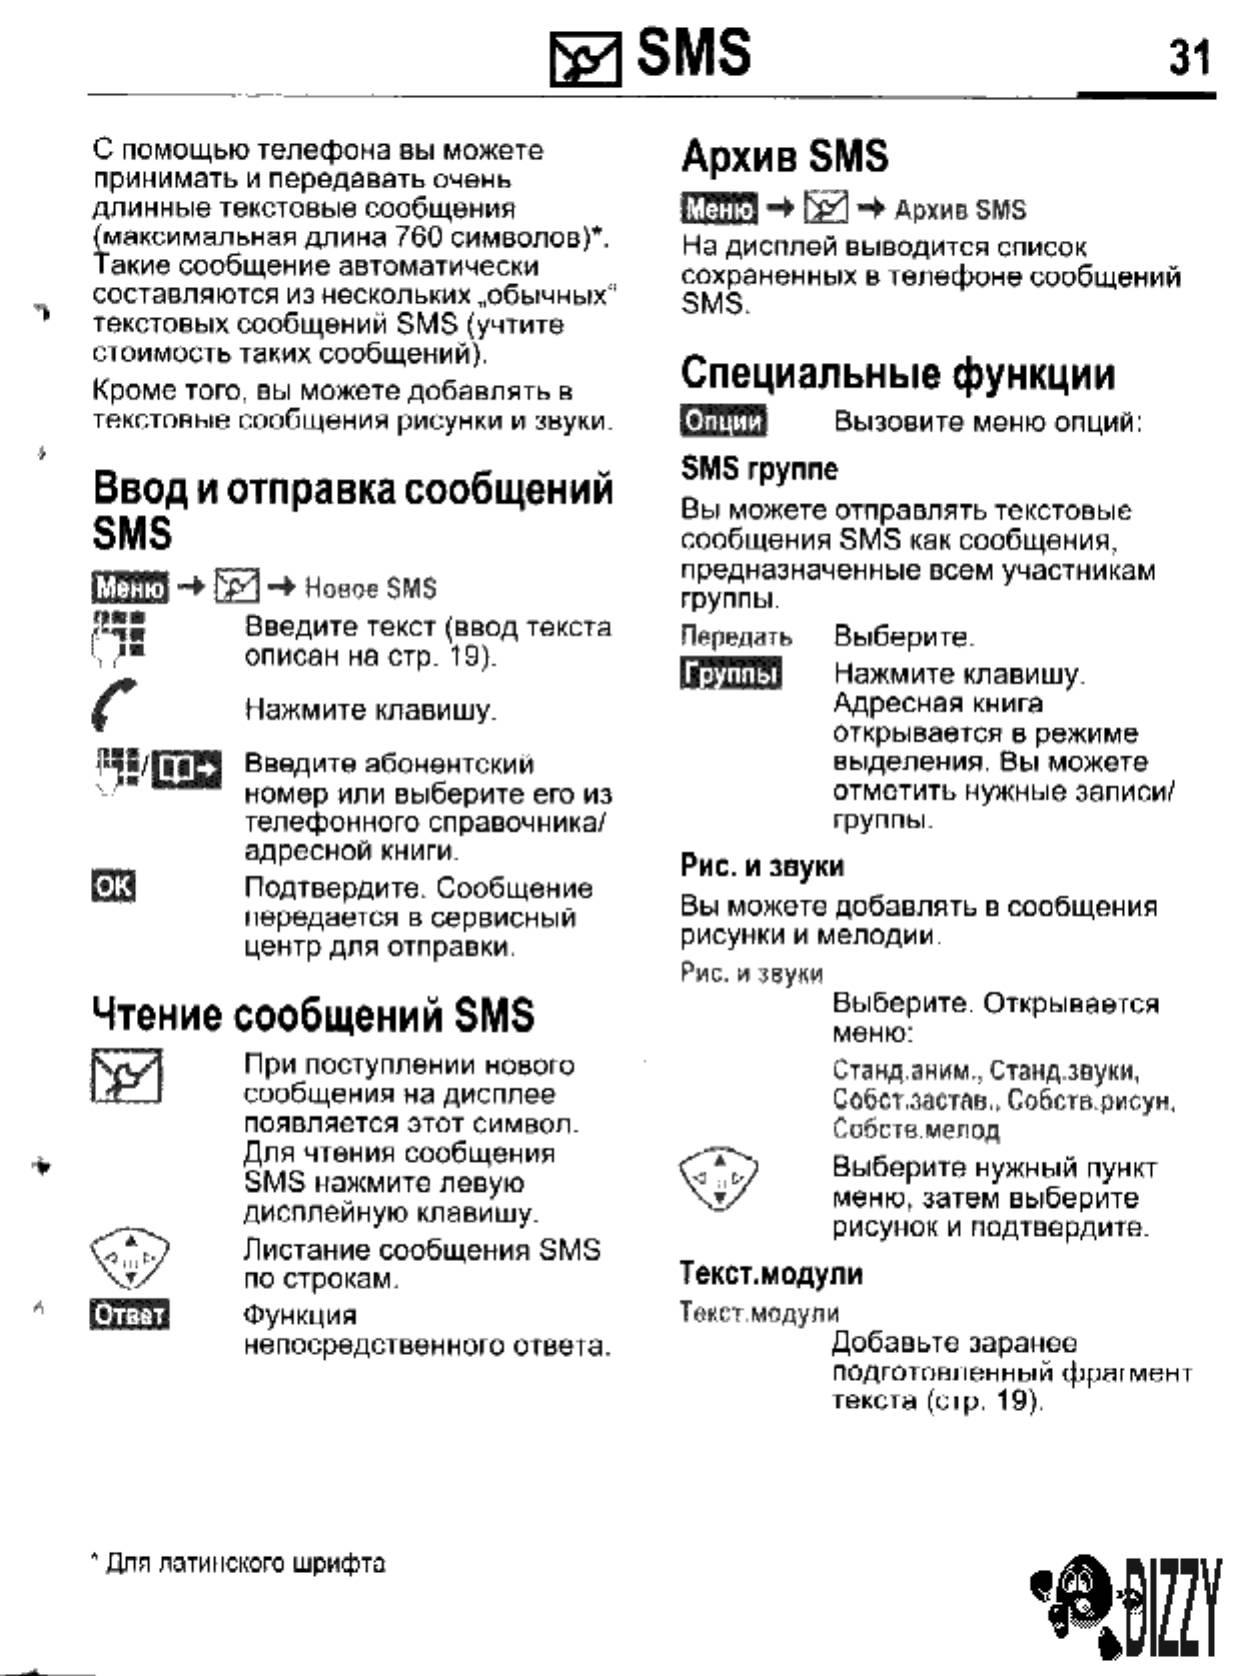 Архив смс в телефоне. Siemens m55 читалка книг. Сименс Power 55 инструкция на русском. Инструкция для sms8zdi48q. Меню по смс.